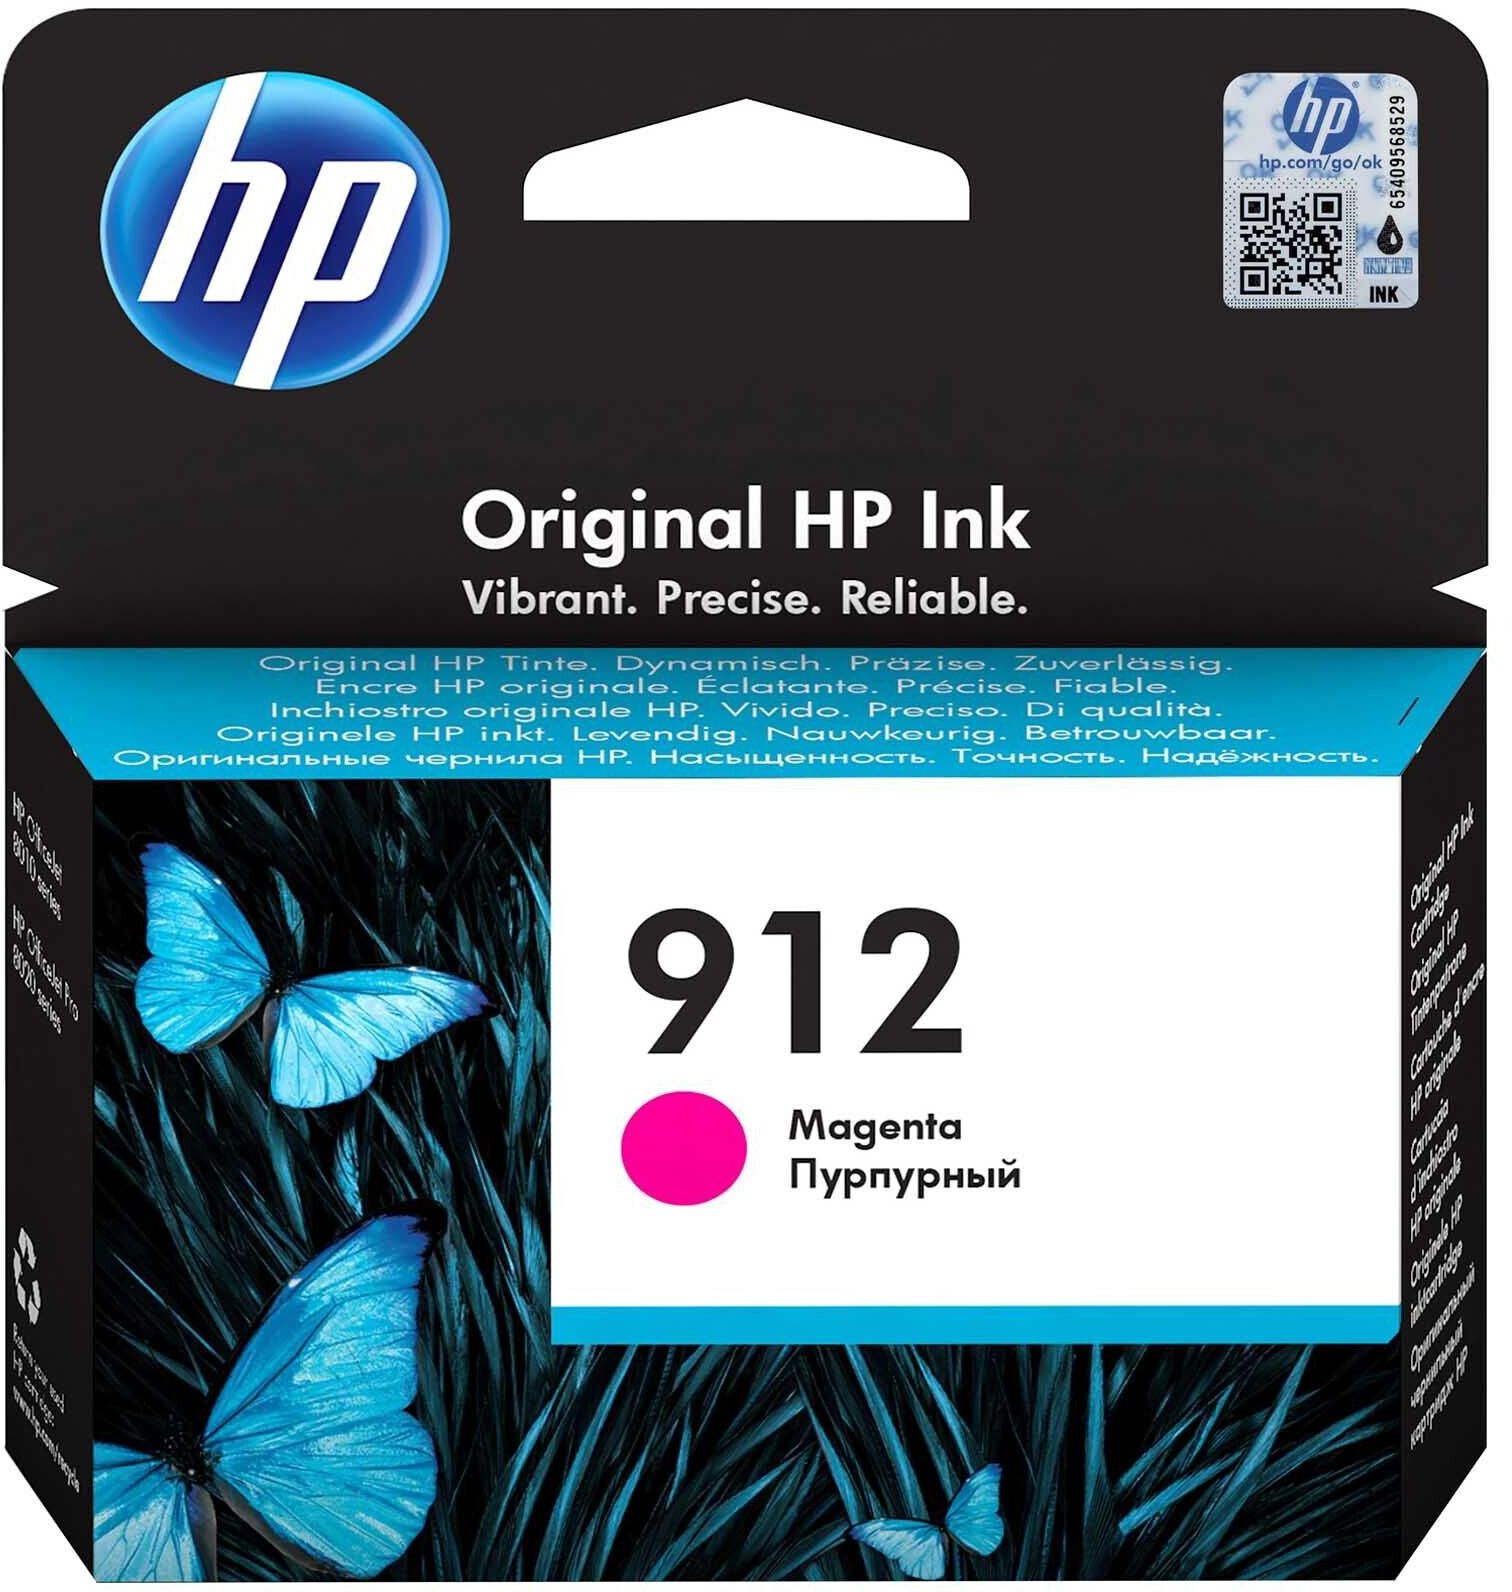 HP 912 MAGENTA Original Ink Cartridge 3YL78AE